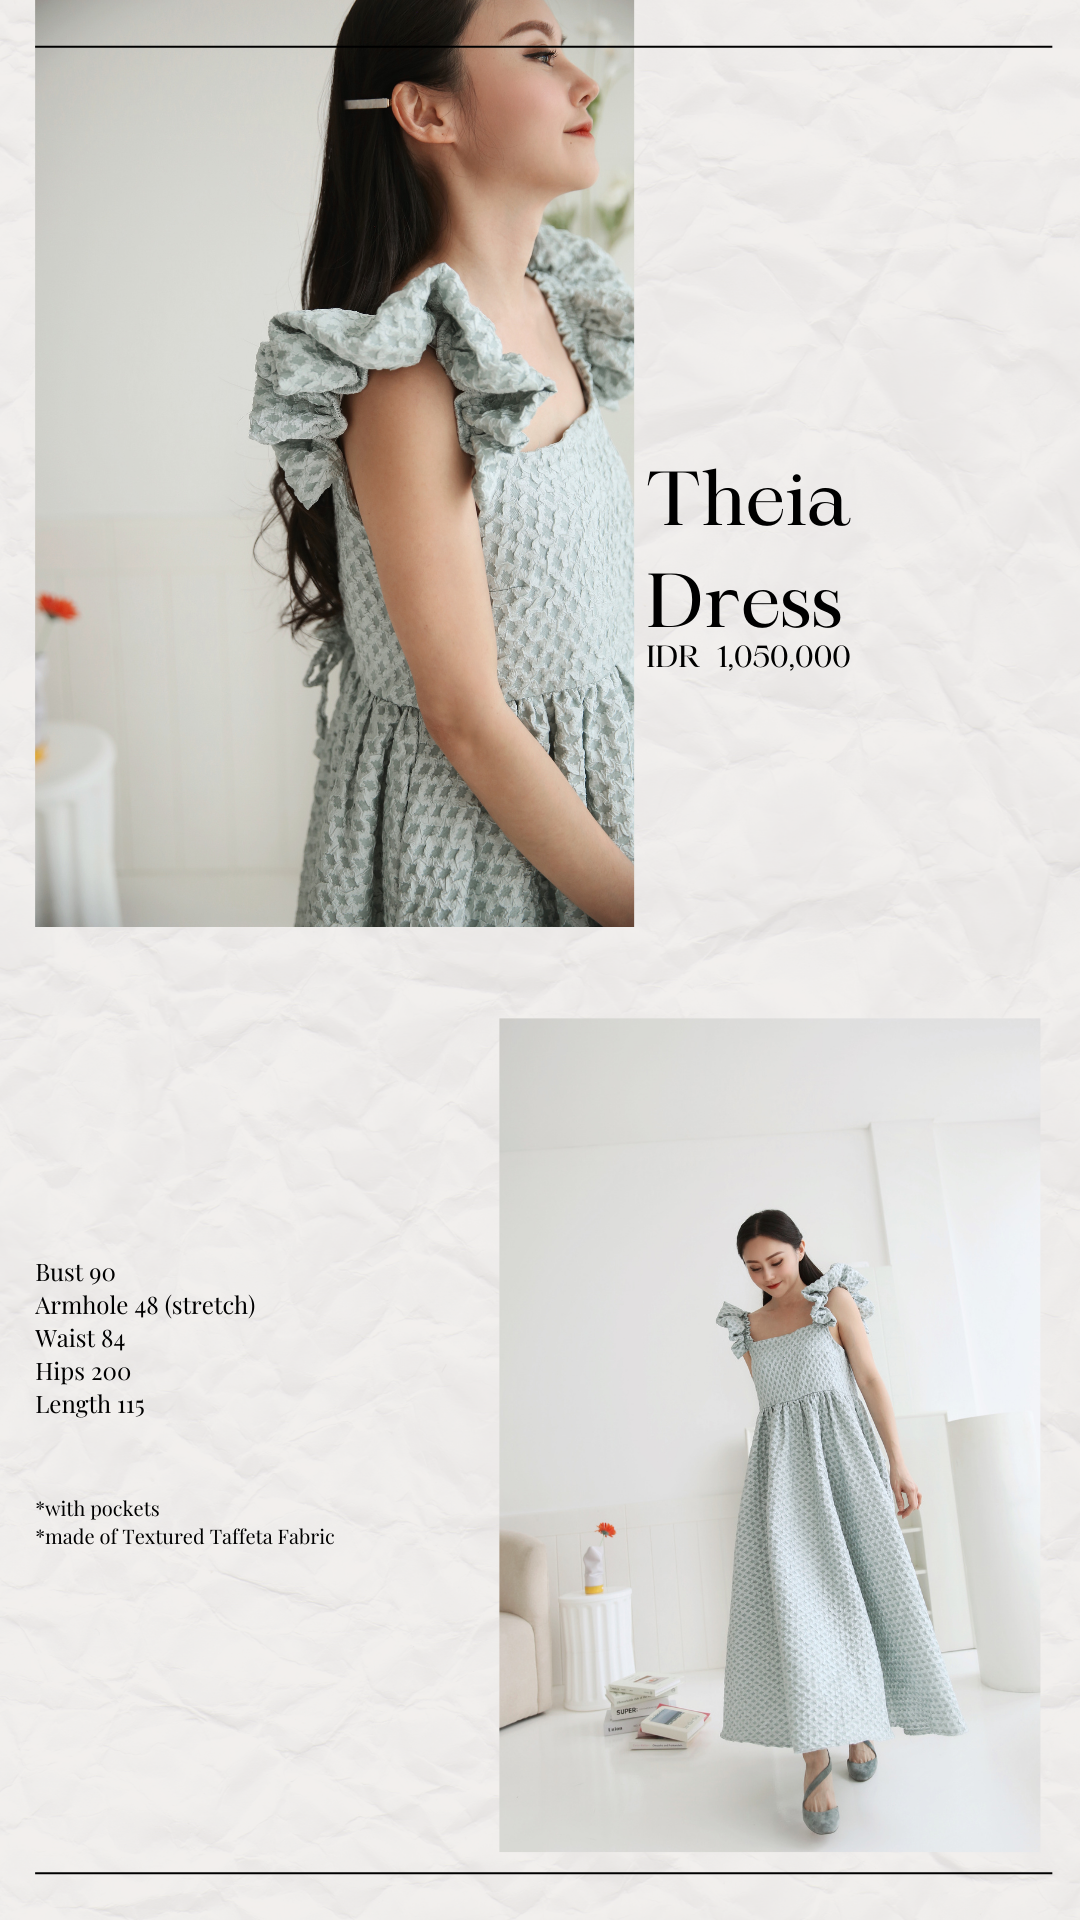 THEIA DRESS